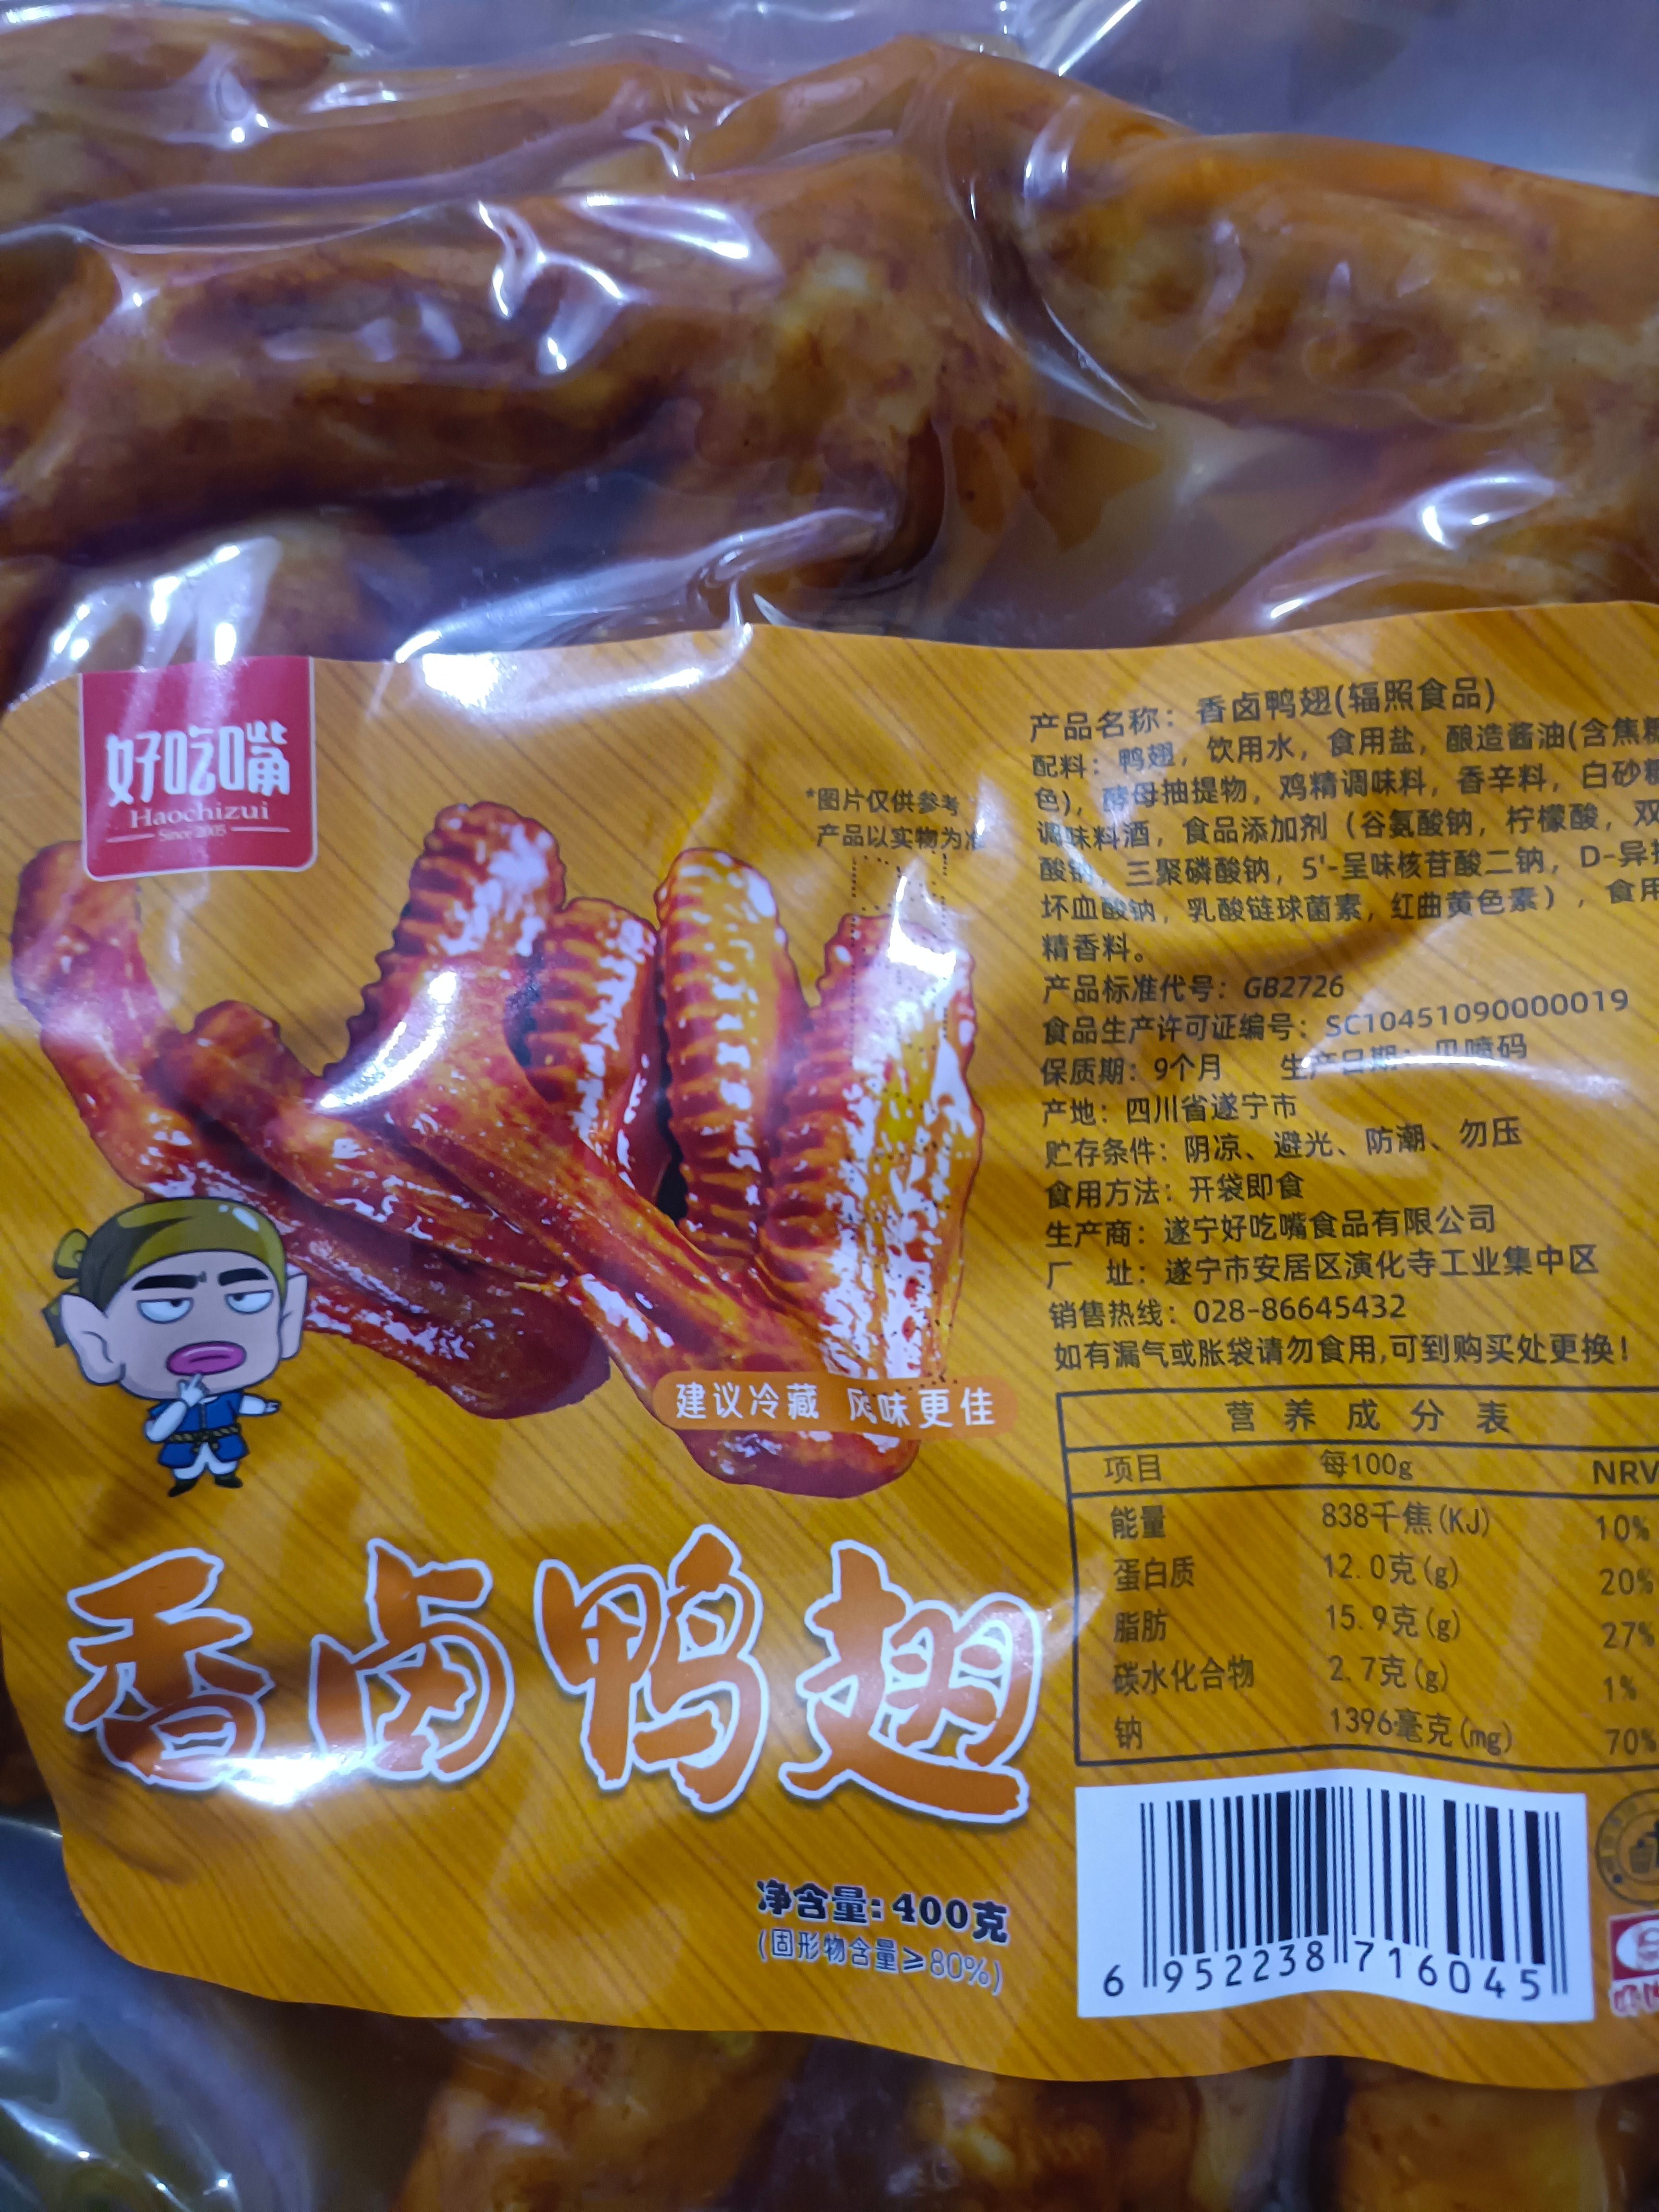 成都麻辣干锅鸭翅，味道巴适 开袋即食 价格美丽。